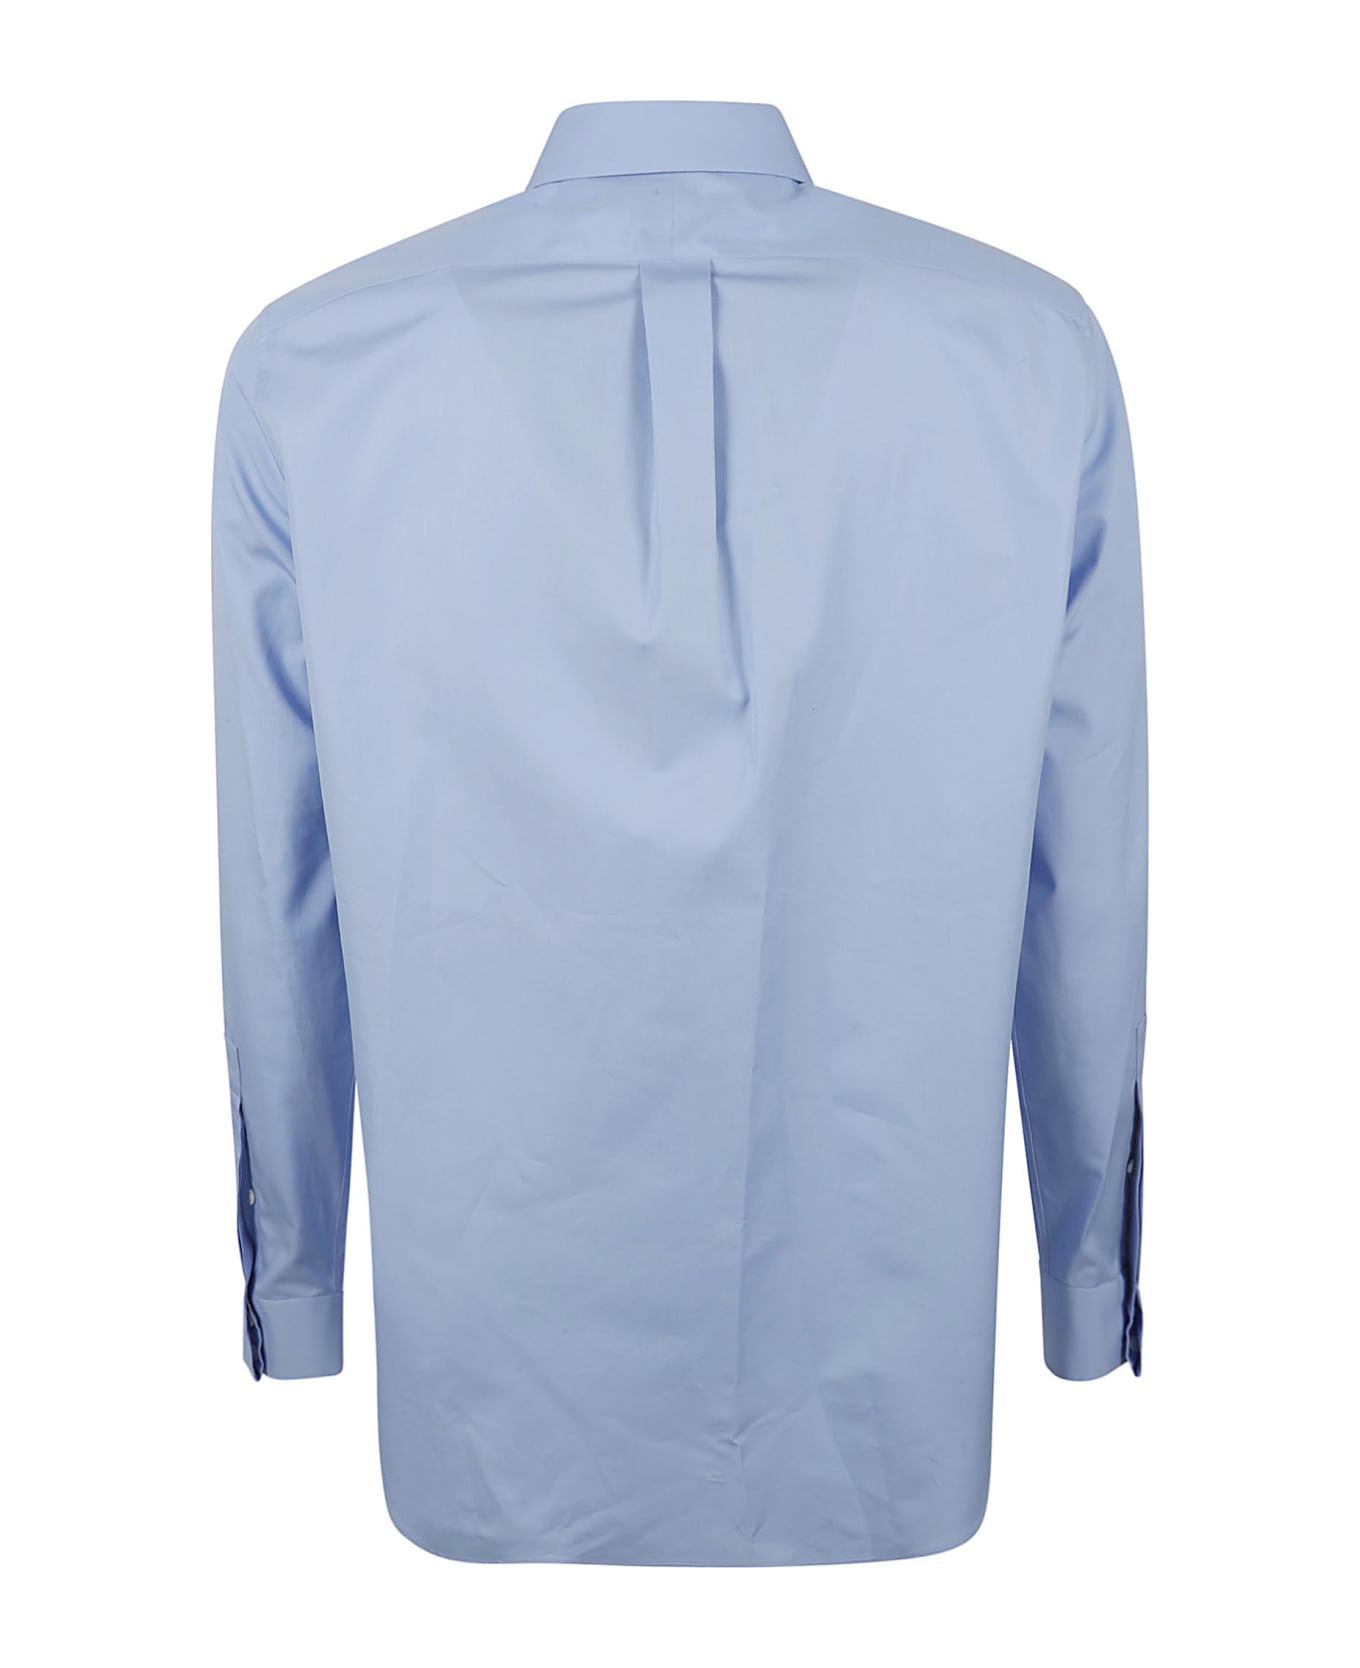 Alexander McQueen High Chest Pocket Shirt - Bluebell シャツ